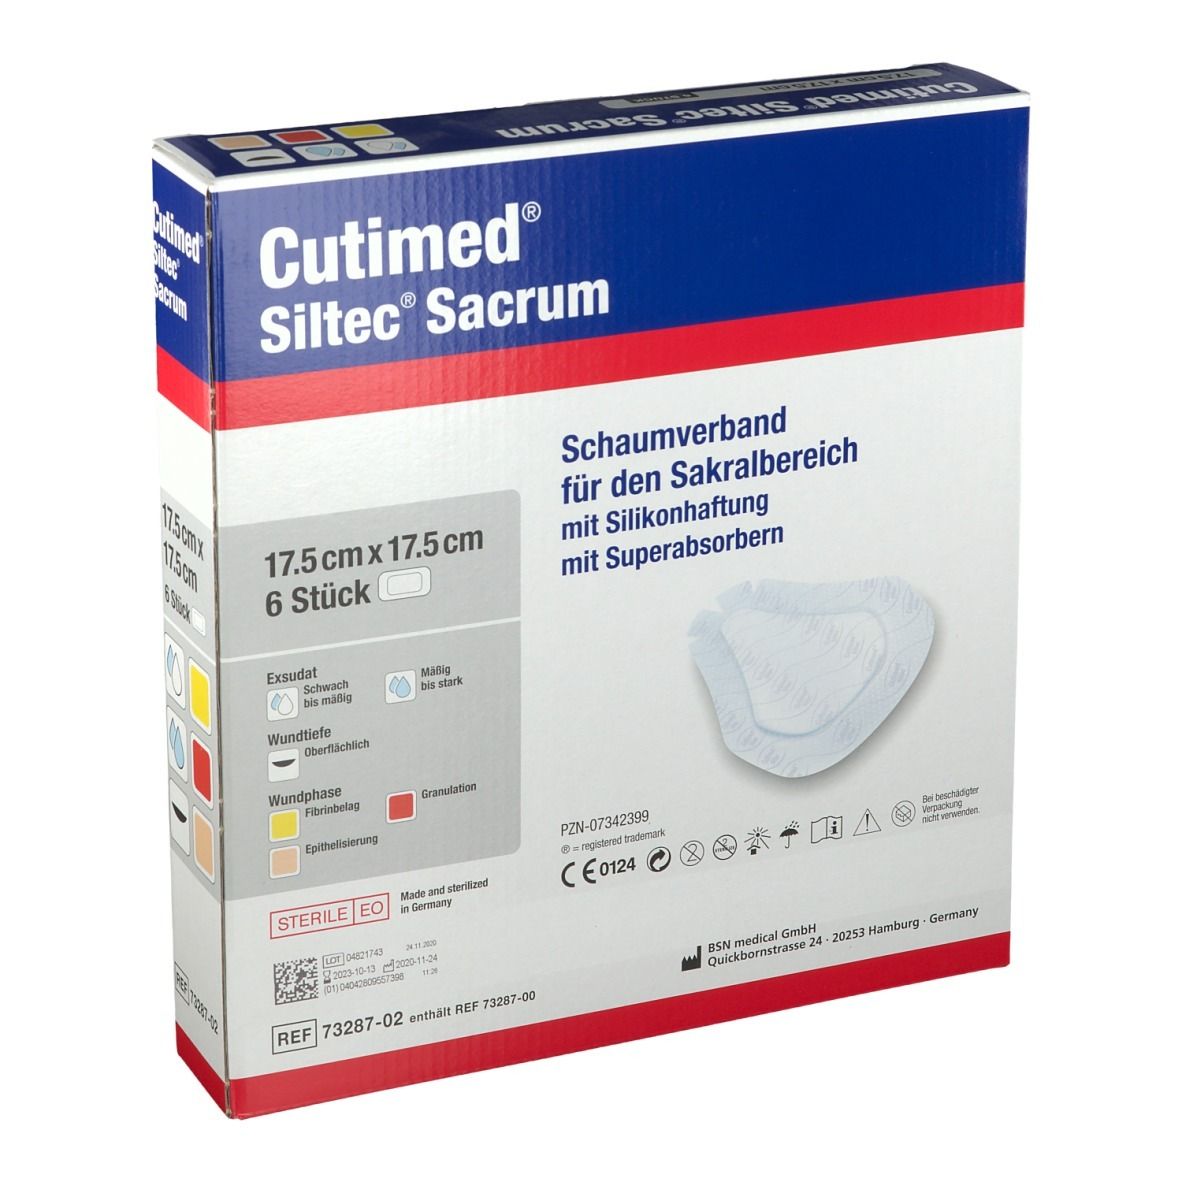 Cutimed® Siltec Sacrum 17,5 cm x 17,5 cm